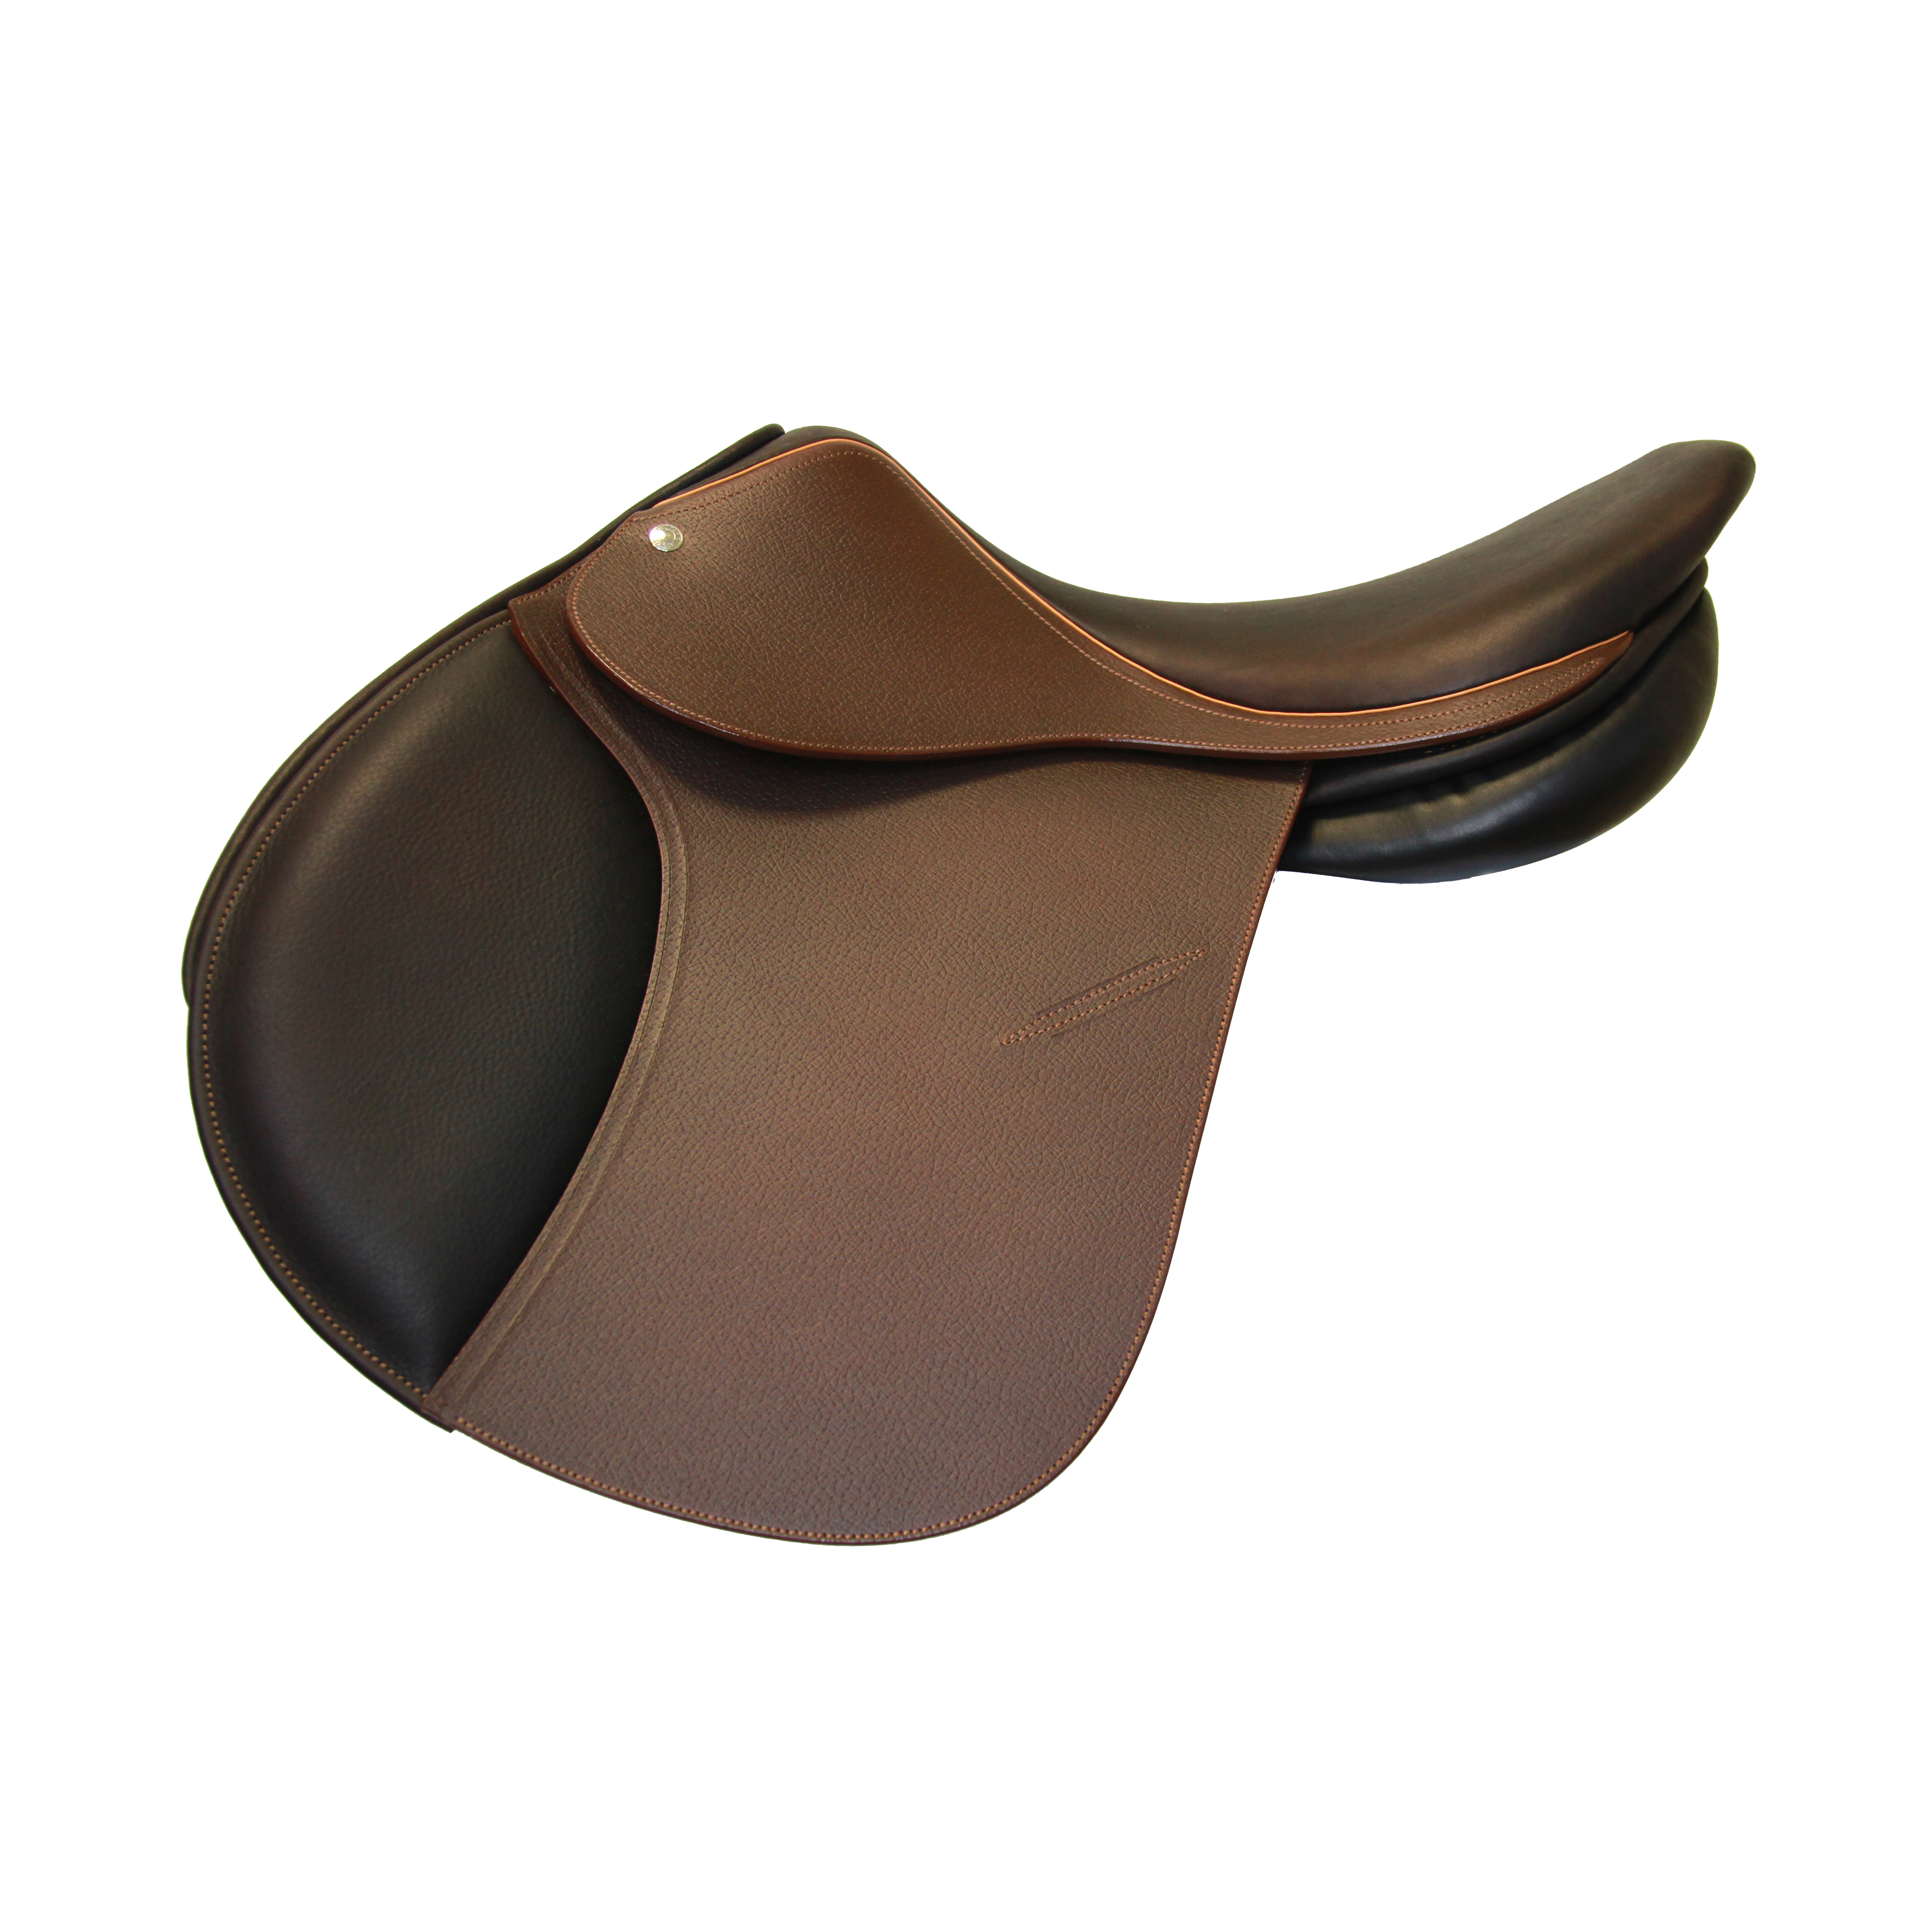 Modèle FSP saut d'obstacles CSO selle sur-mesure Childéric cuir bespoke saddle fait en France made in France fait main